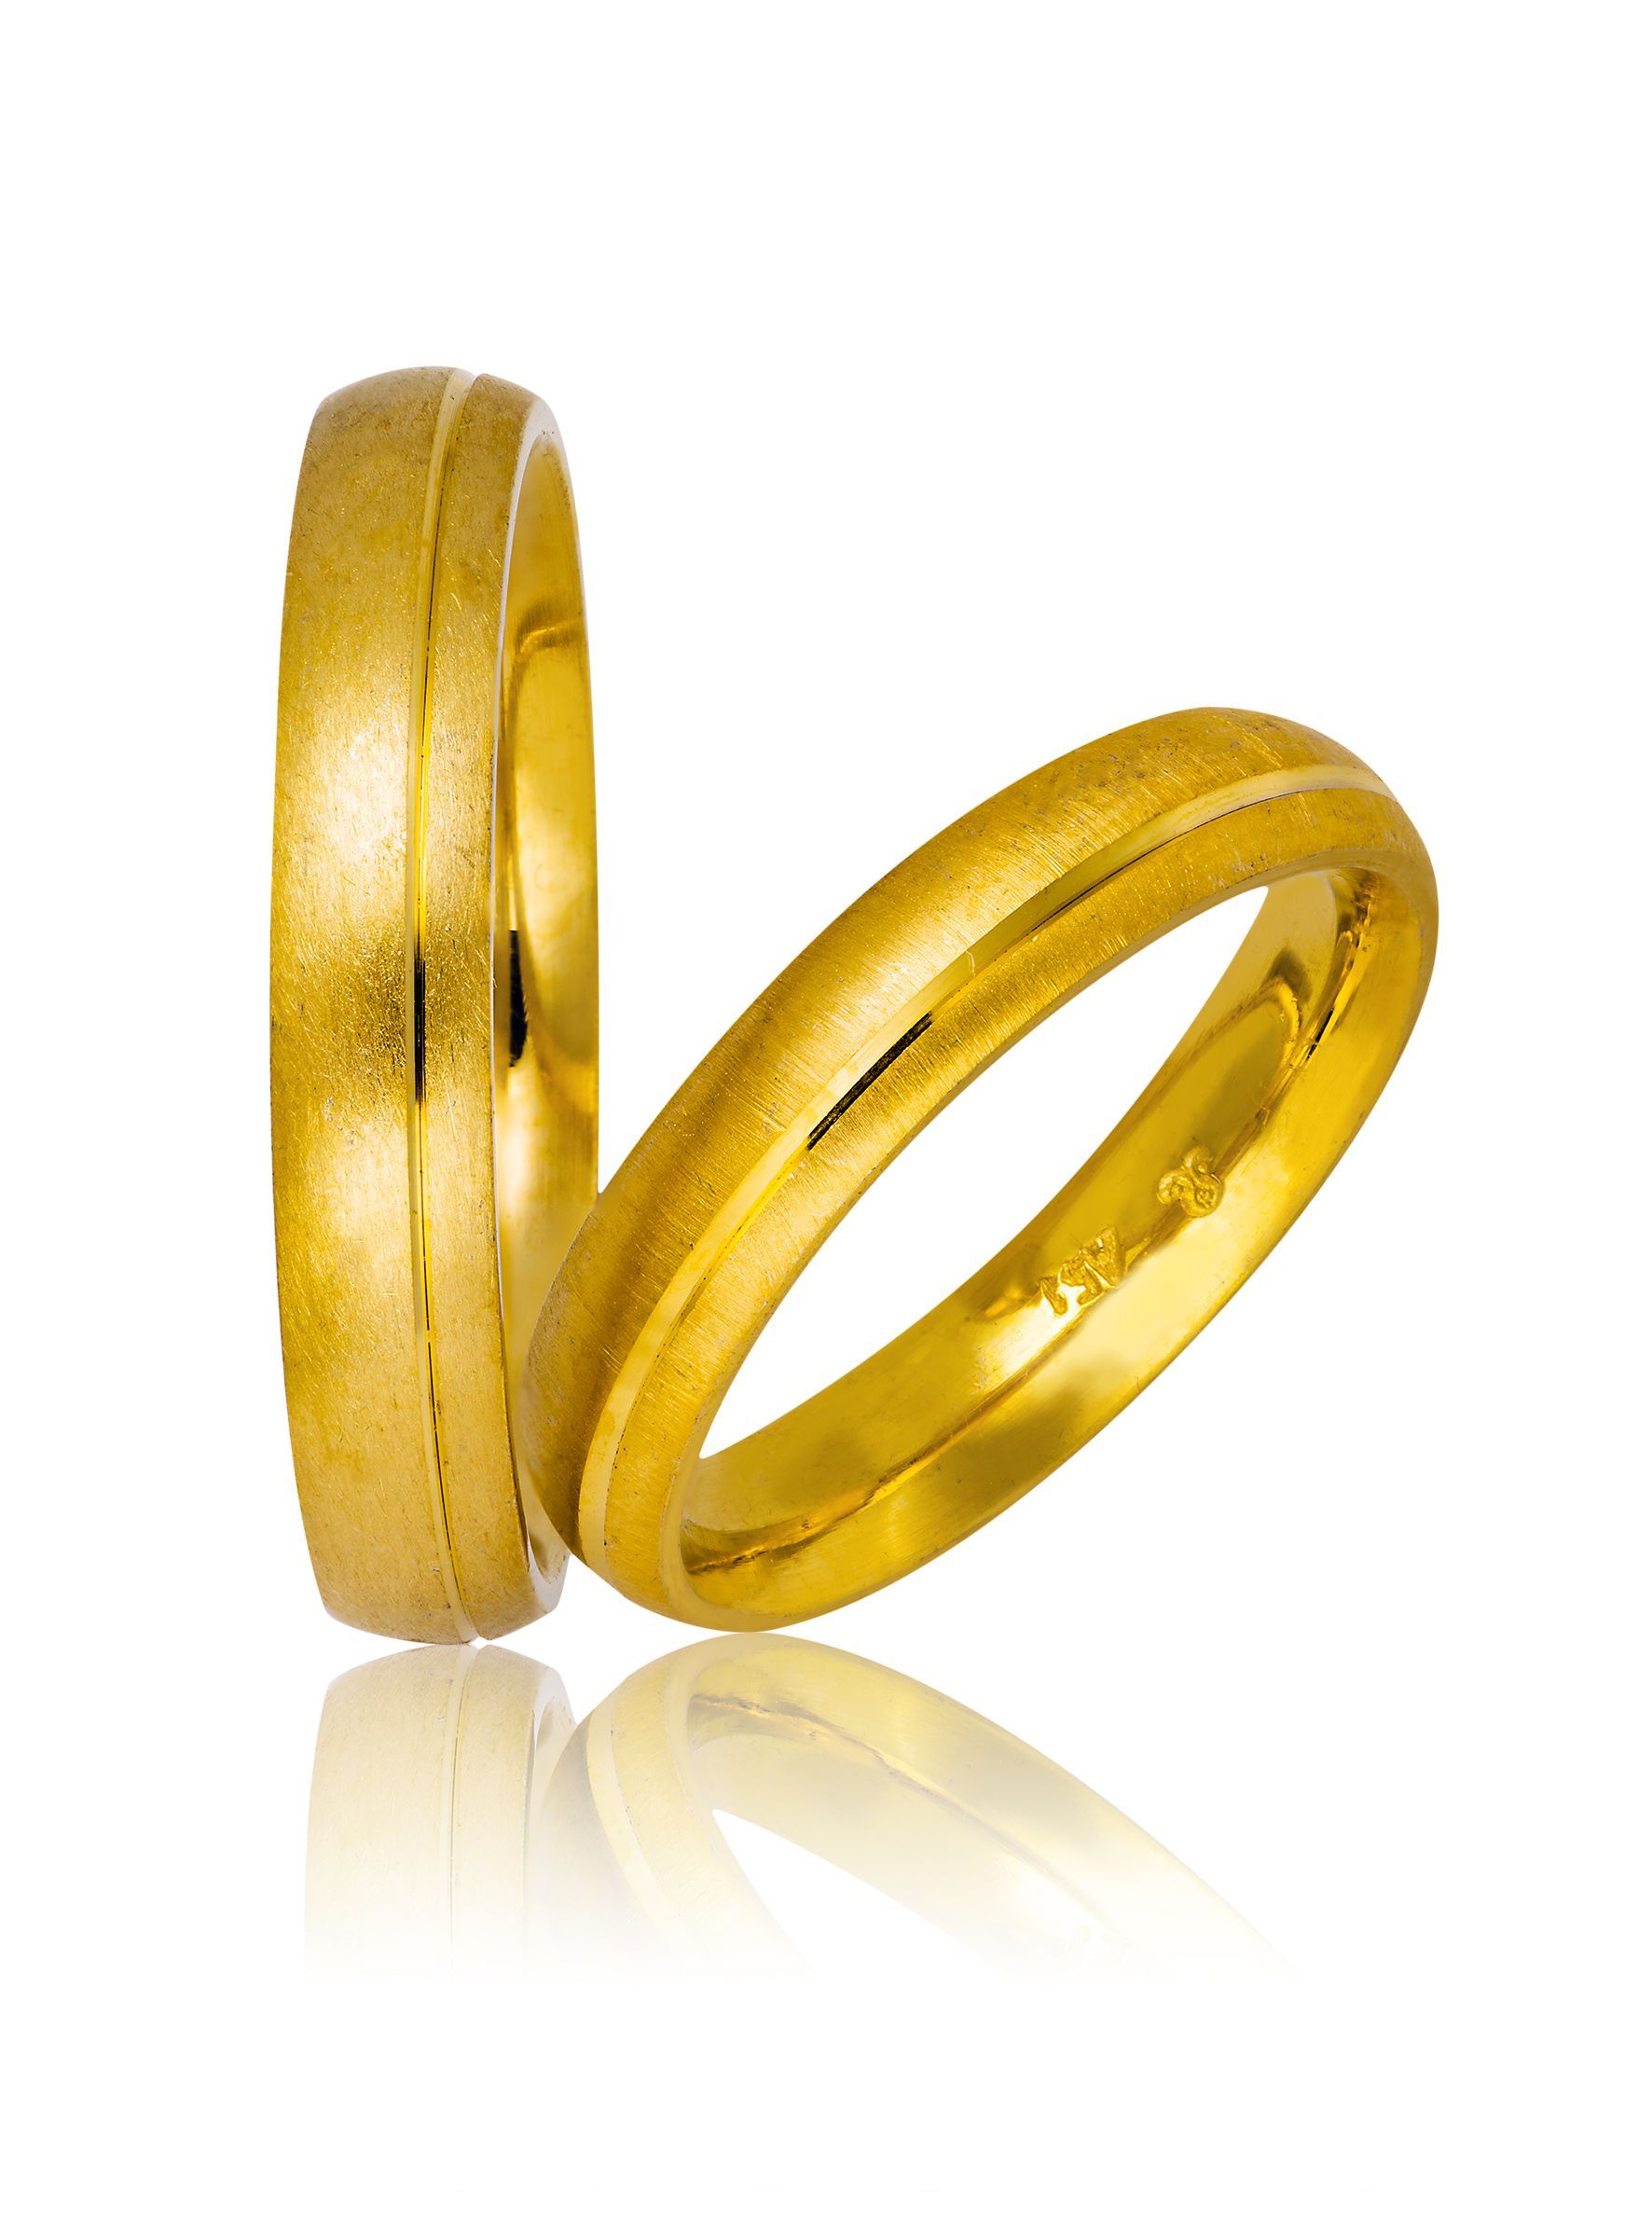 Golden wedding rings 4mm (code 703)